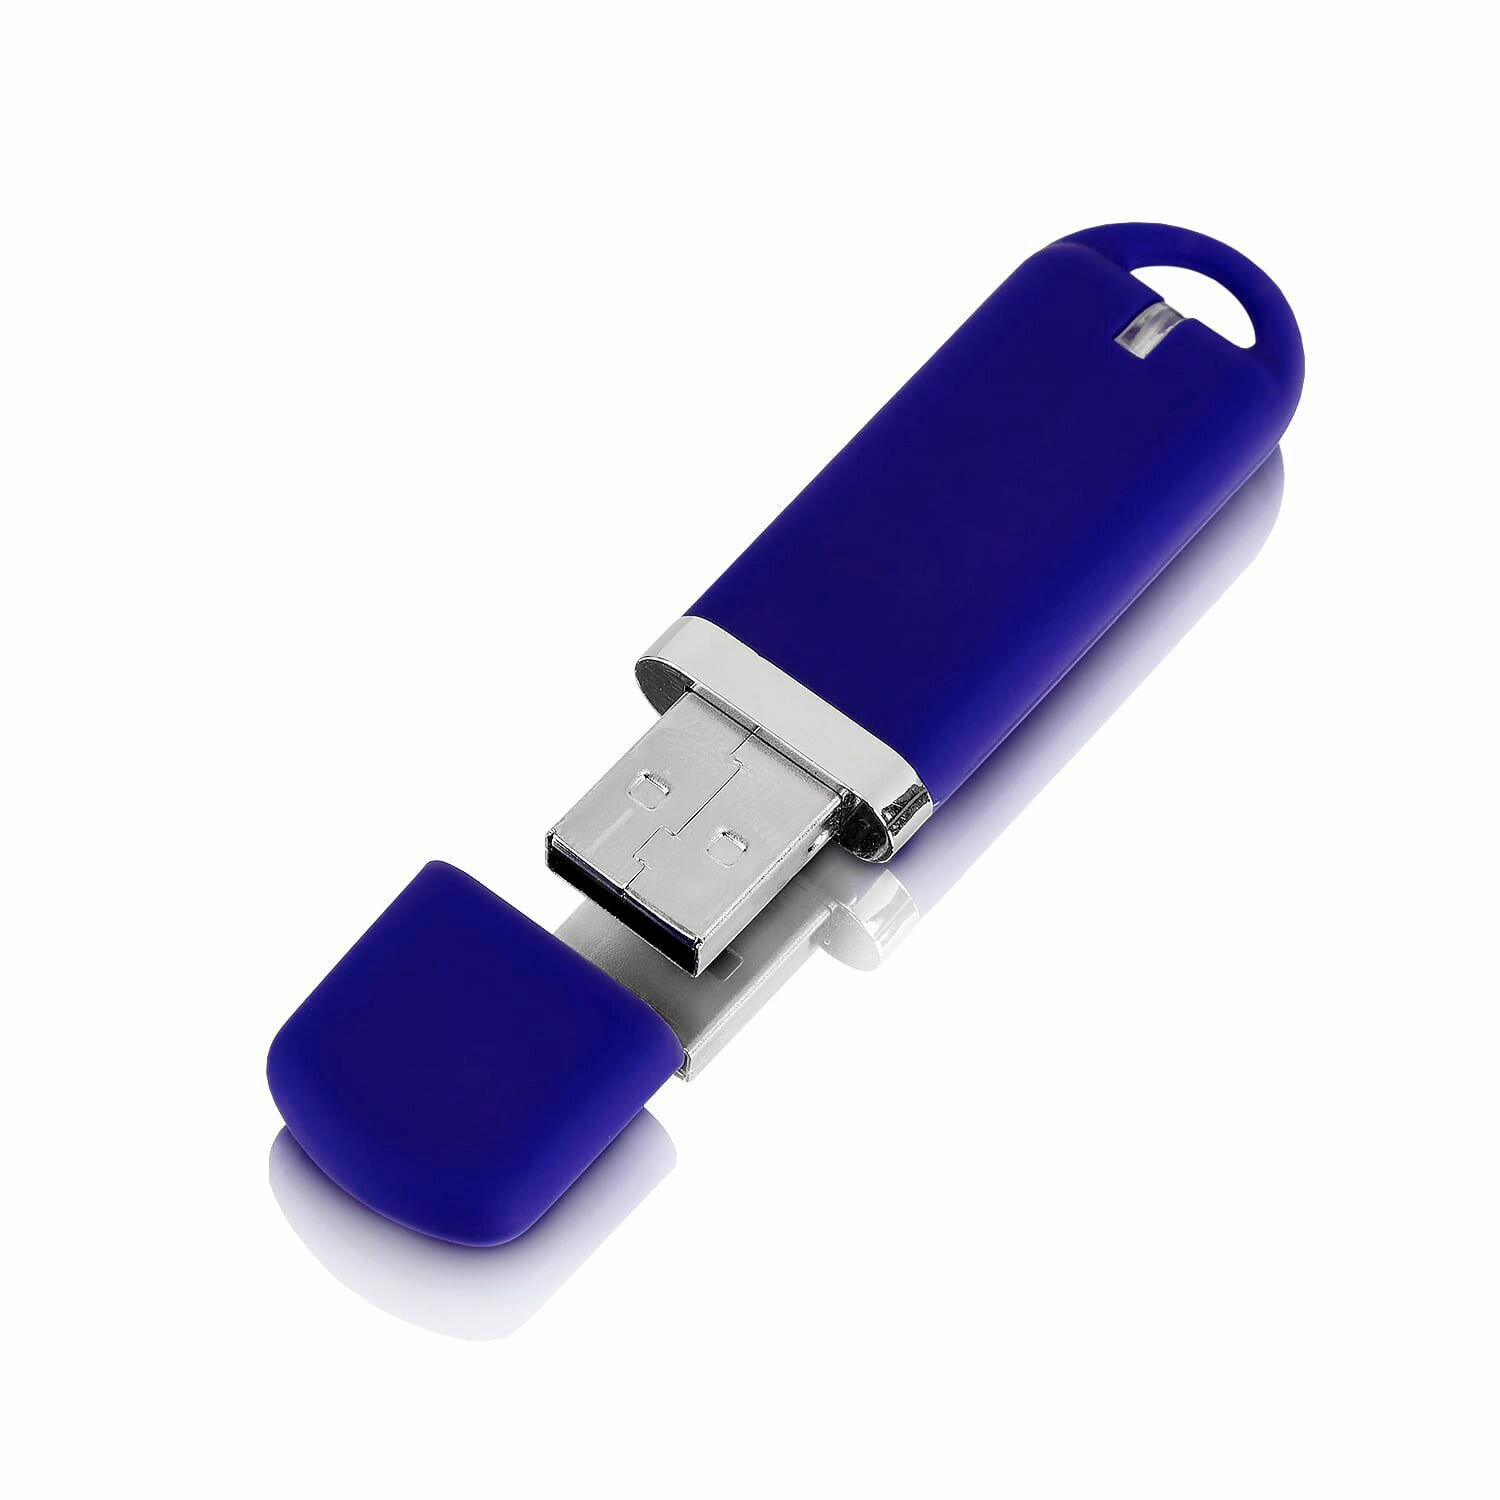 Флешка Memo, 128 ГБ, темно-синяя, USB 3.0, арт. F34 30шт